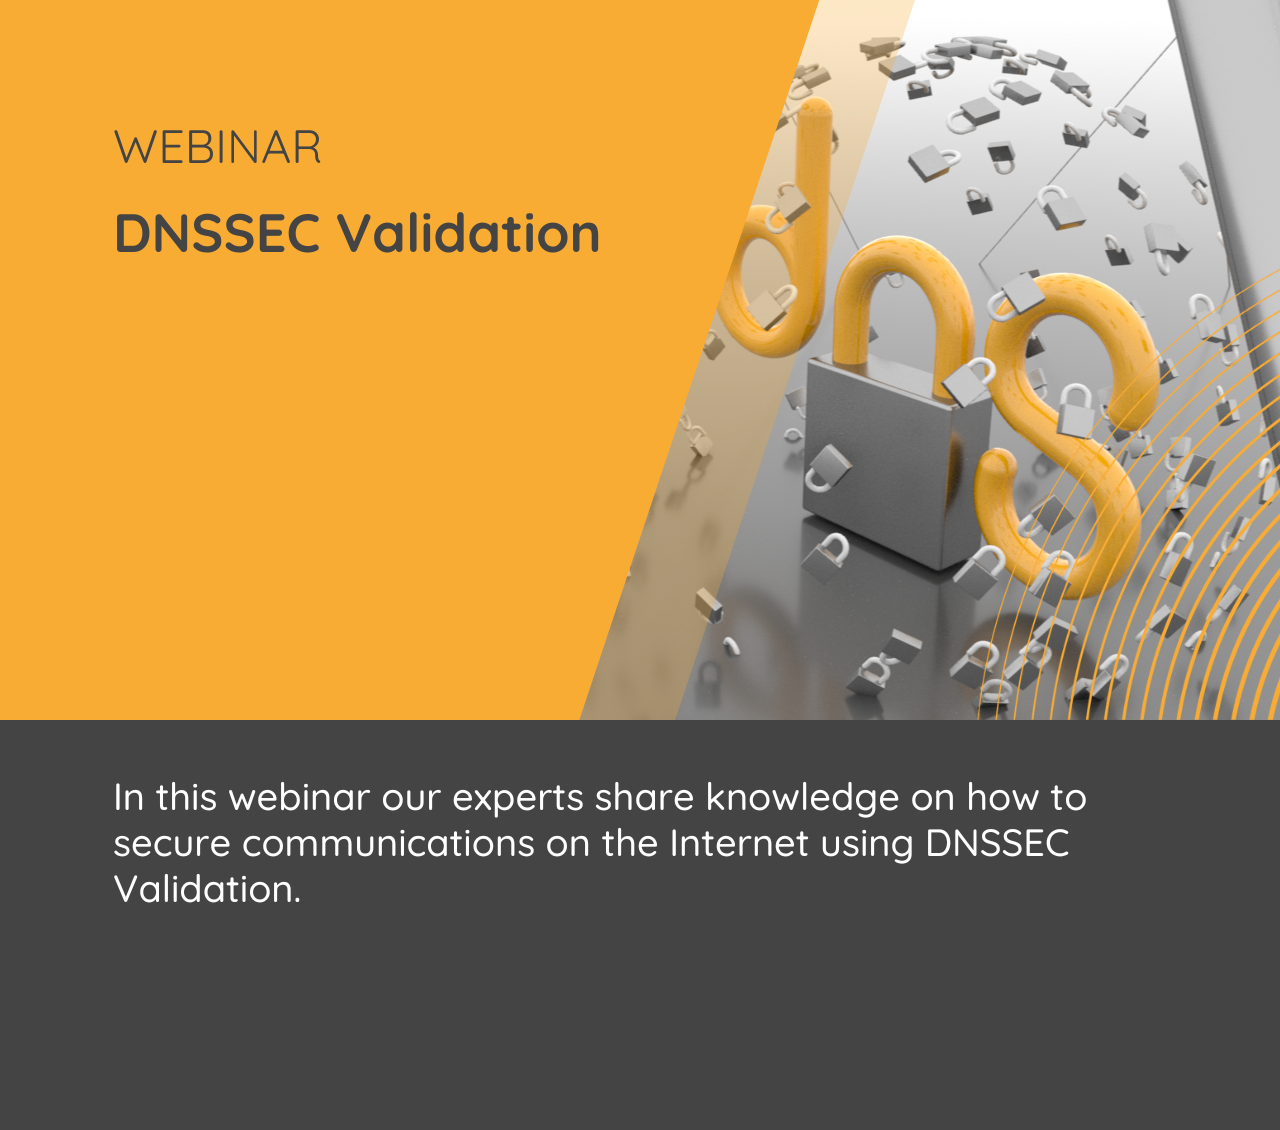 DNSSEC Validation